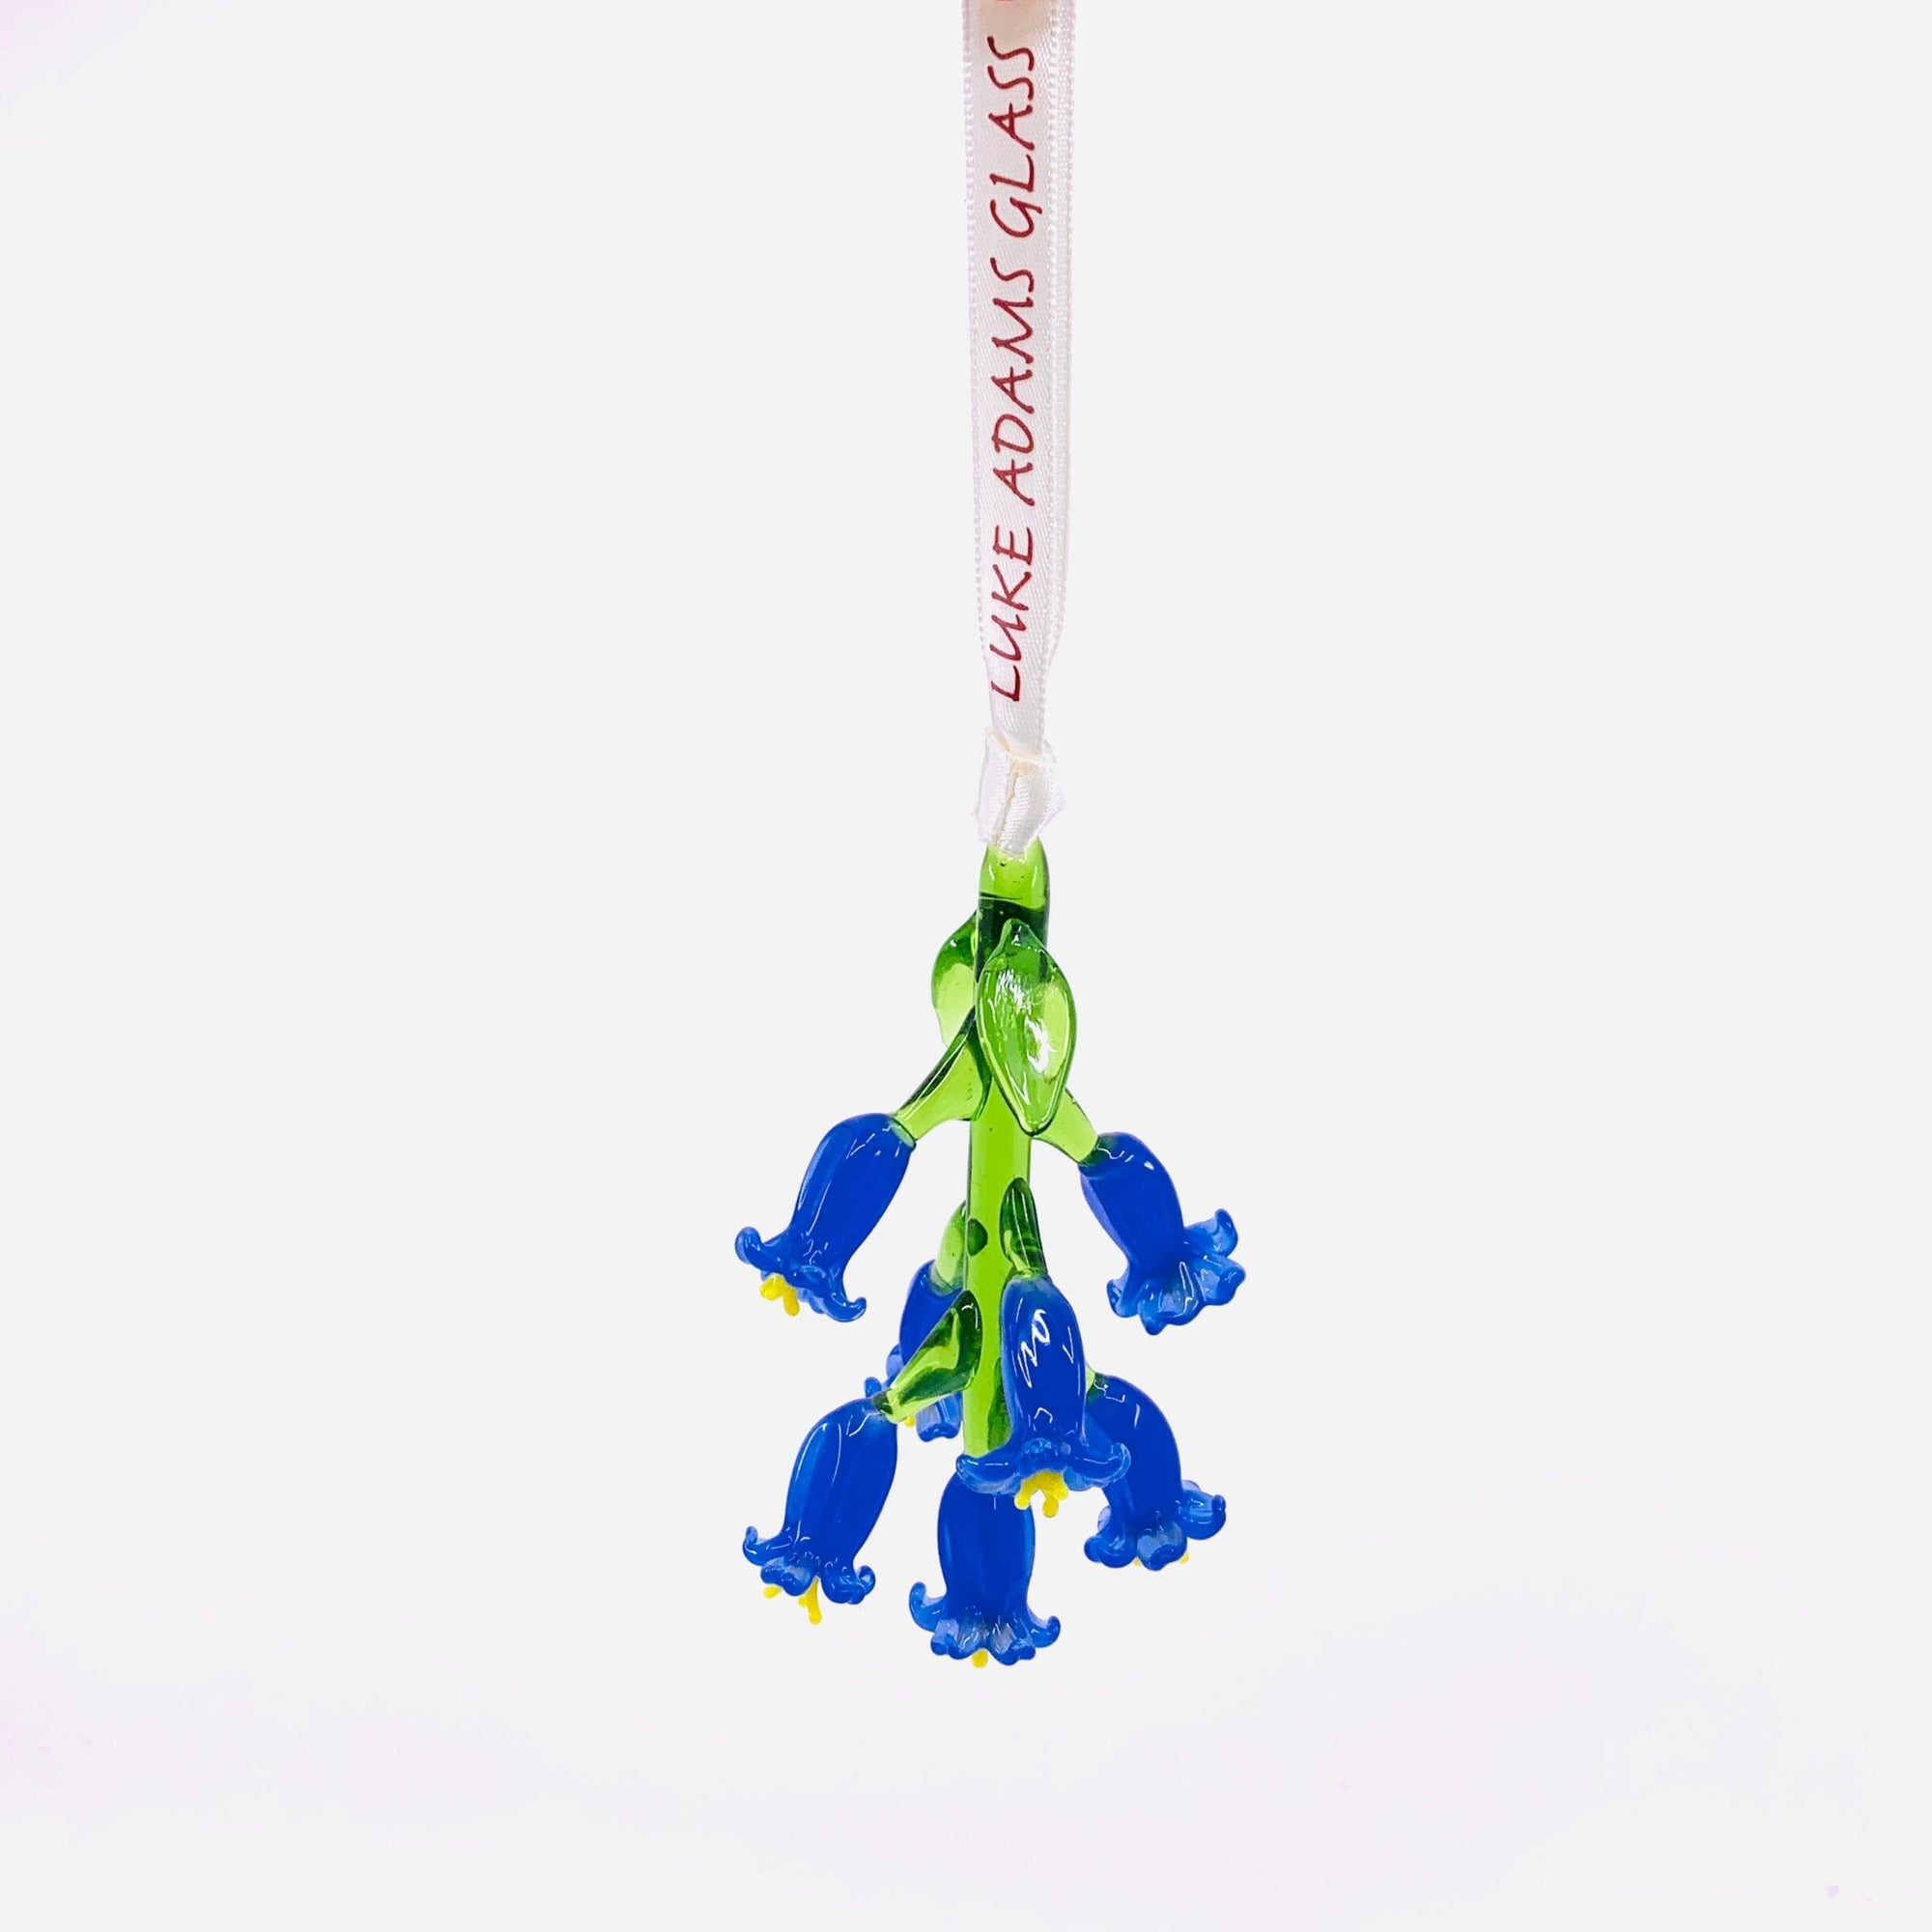 Ribbon Glass Ornament 9, Bluebell Art Studio 